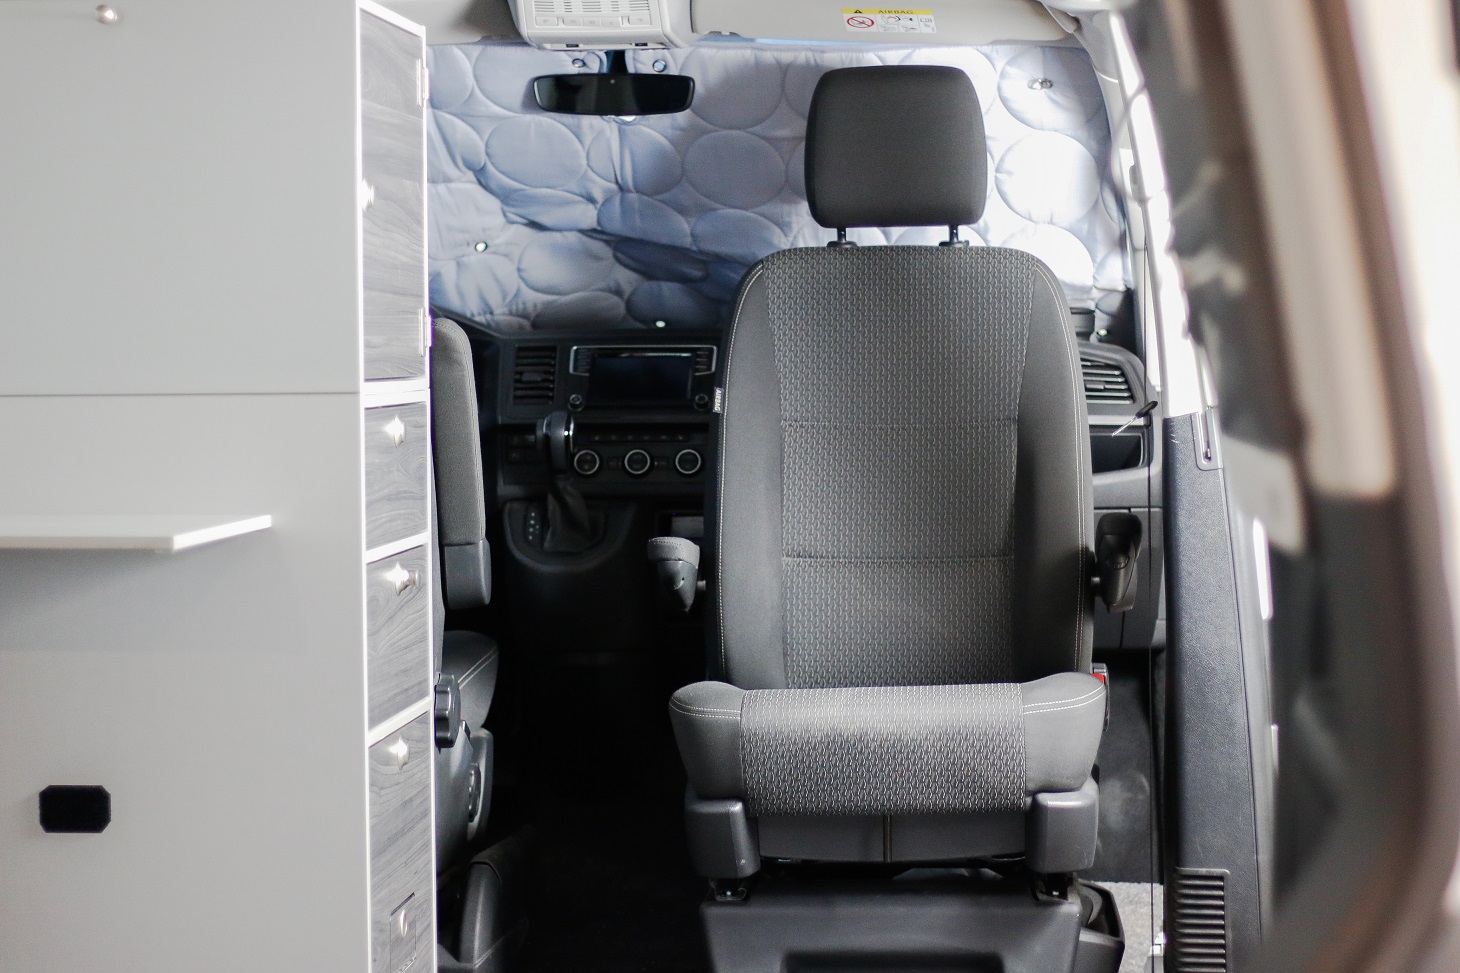 Drehkonsole Doppelsitzbank für den VW T5 einbauen » so geht's